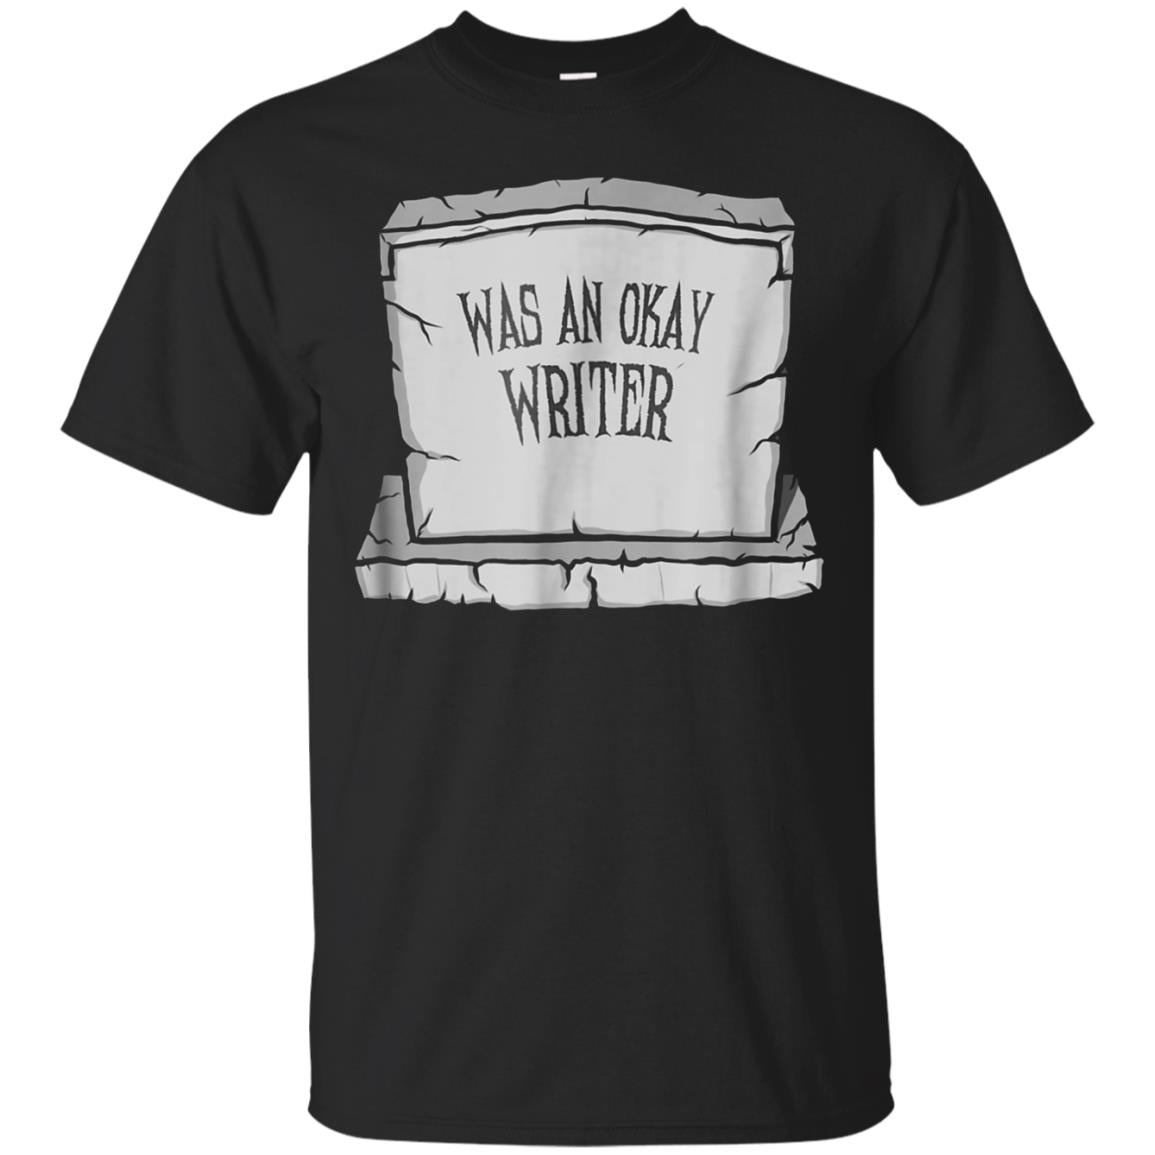 Halloween T-shirt For Writers; Fun Gravestone Writer Tee